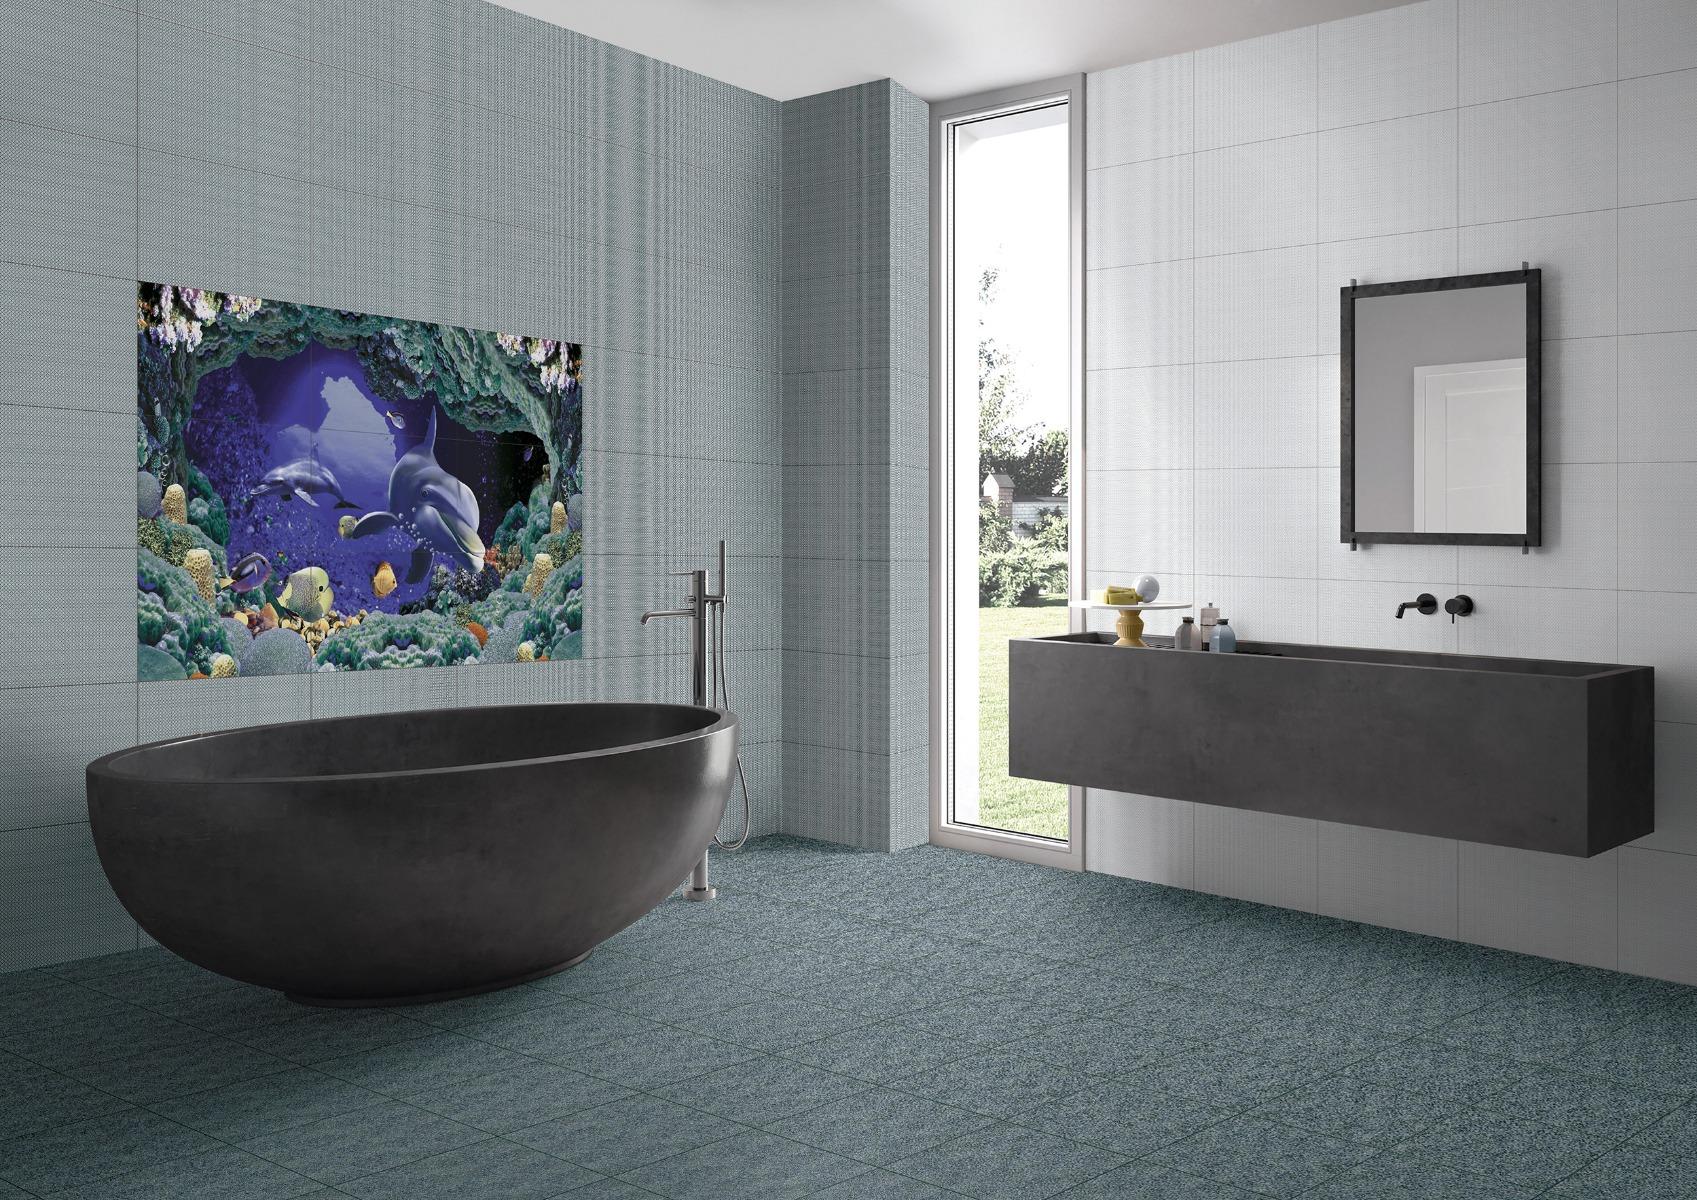 Dolphin Tiles for Bathroom Tiles